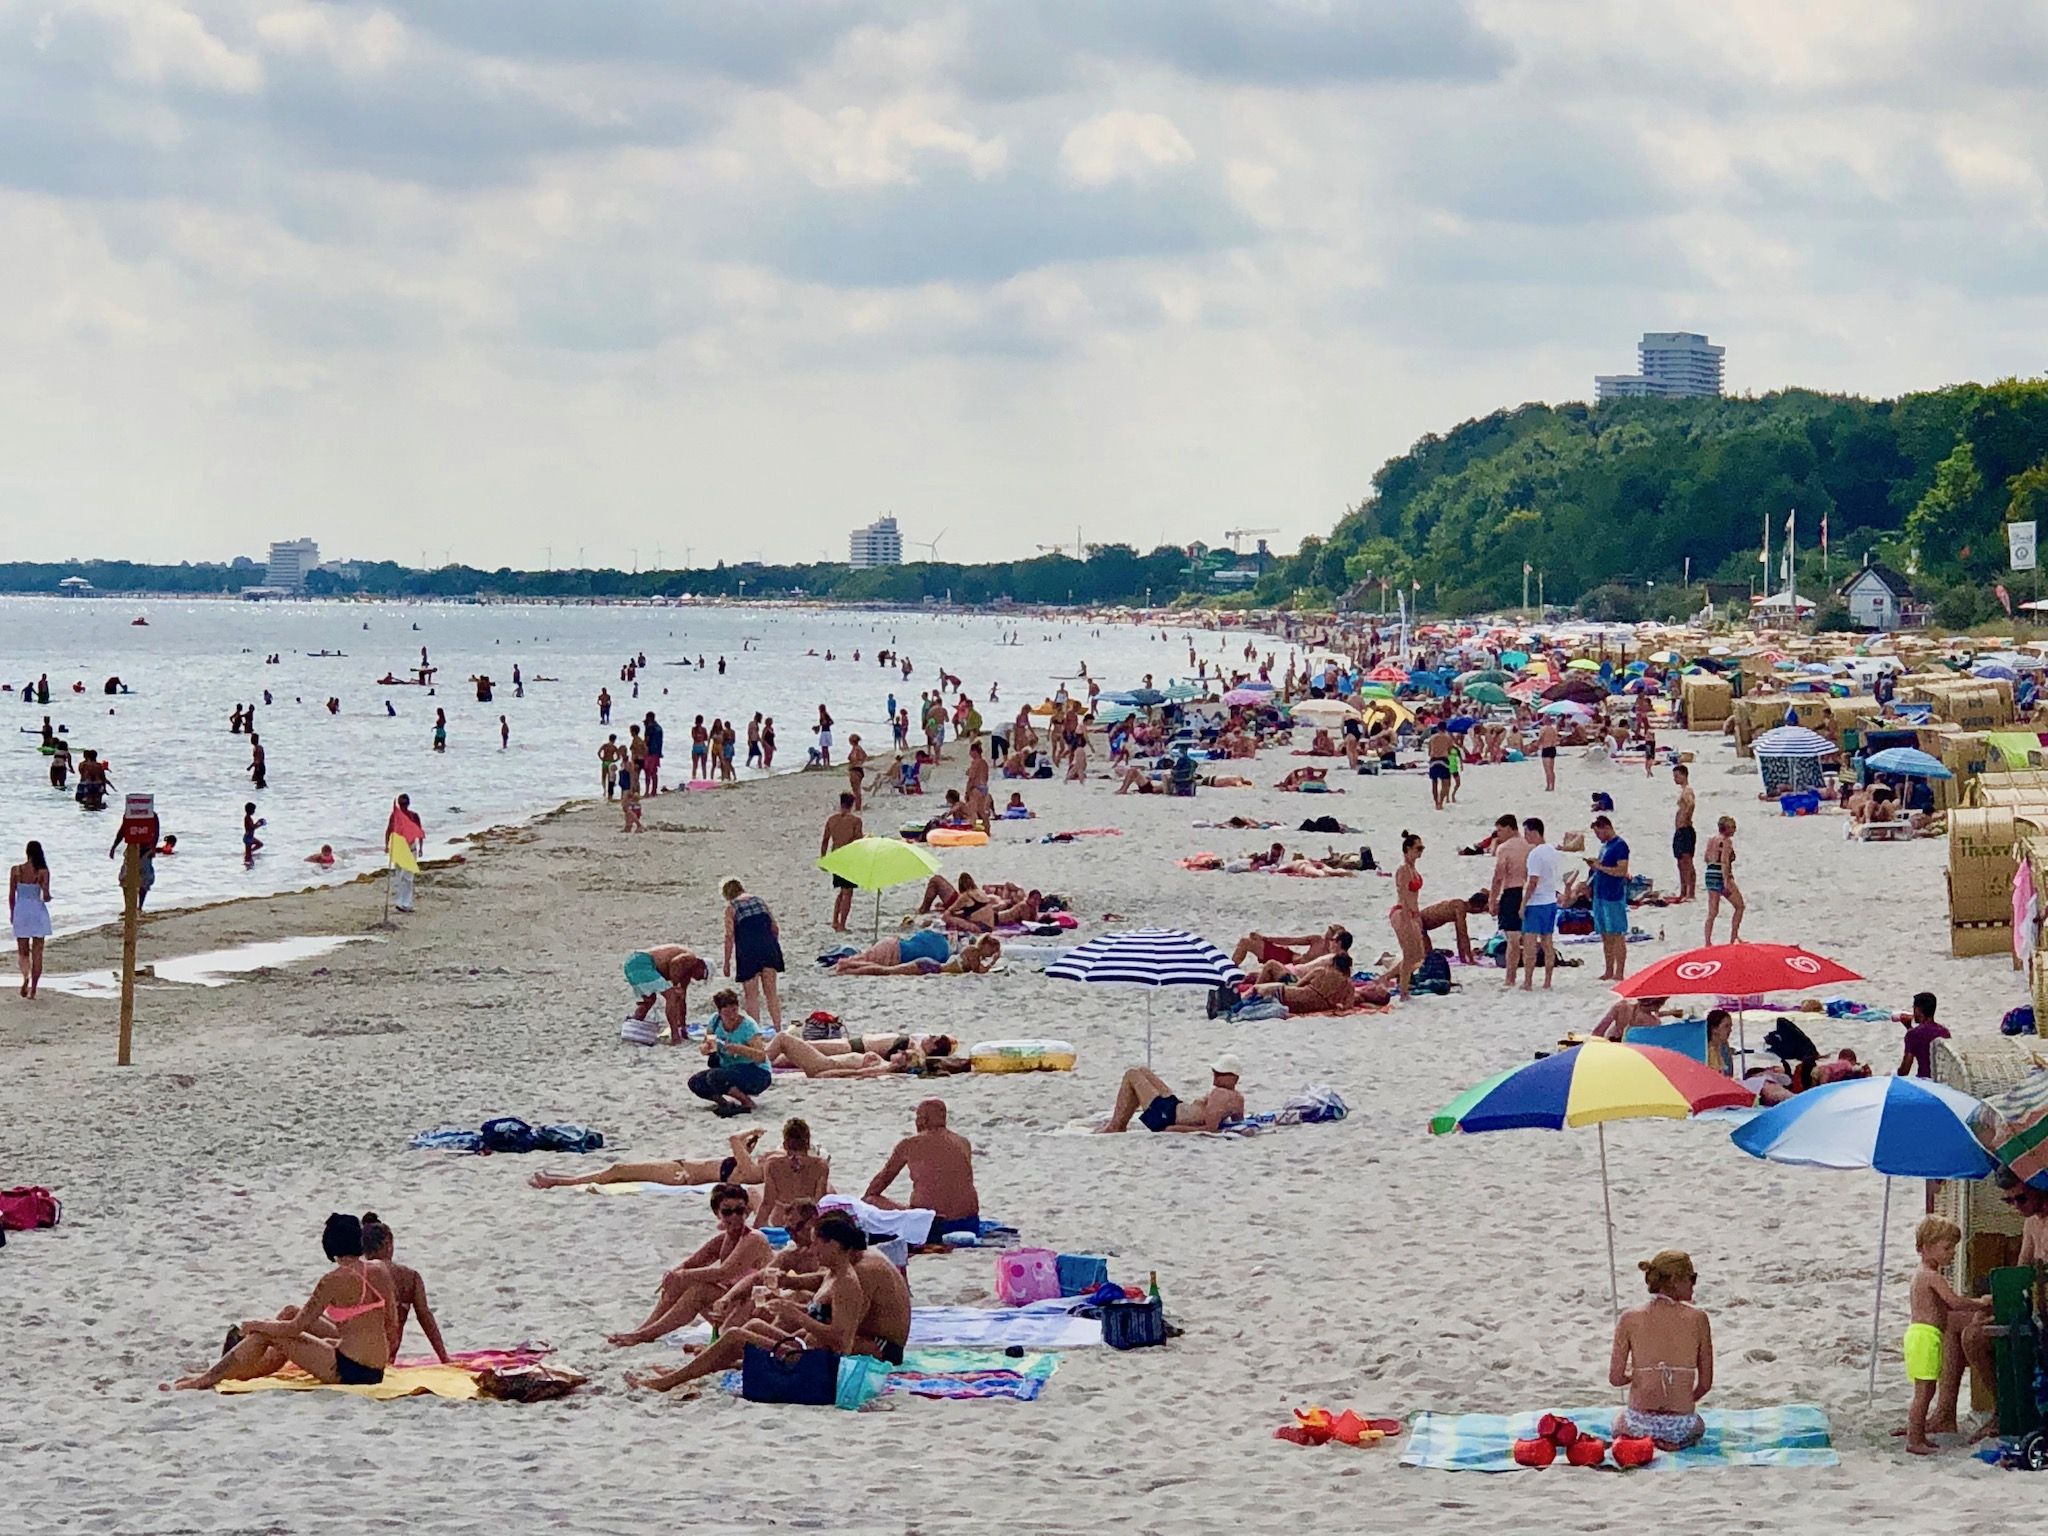 Schwimmen in der Ostsee Erfahrungsbericht – unterschätzte Gefahr für Badeurlauber?